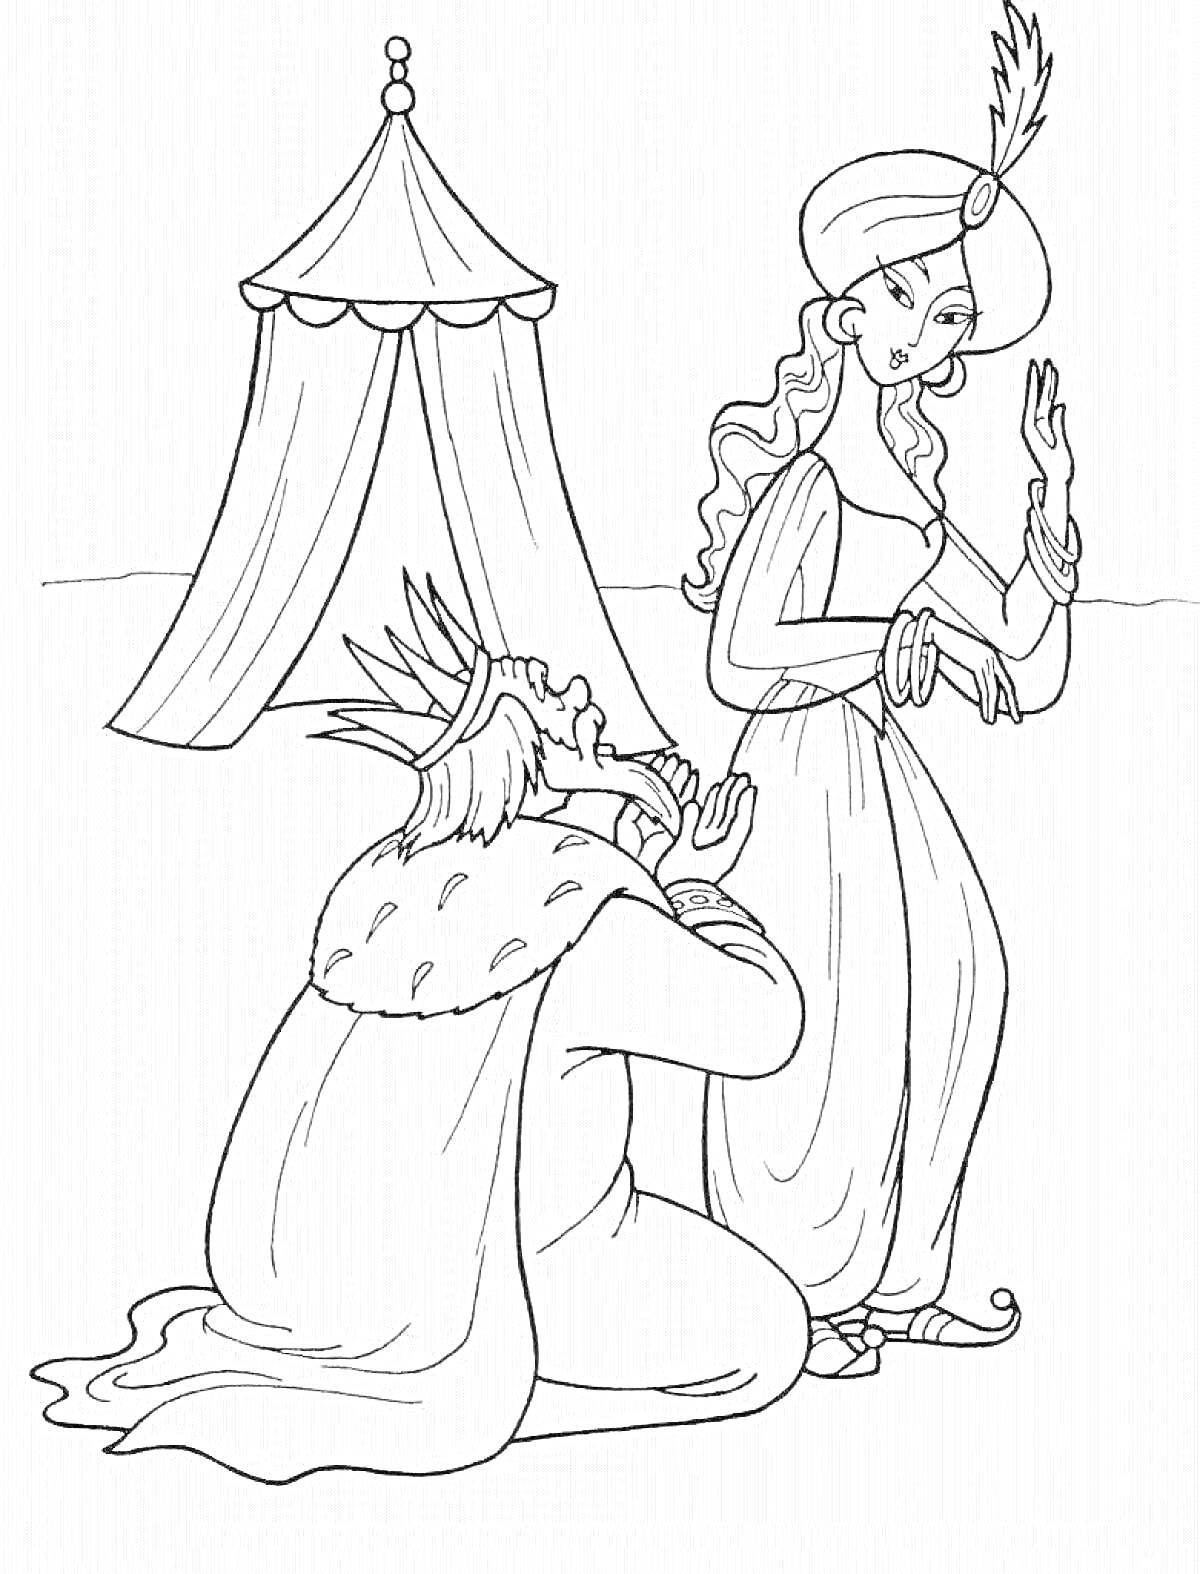 На раскраске изображено: Король, Женщина, Восточная одежда, Шатер, Коленопреклонение, Корона, Длинные волосы